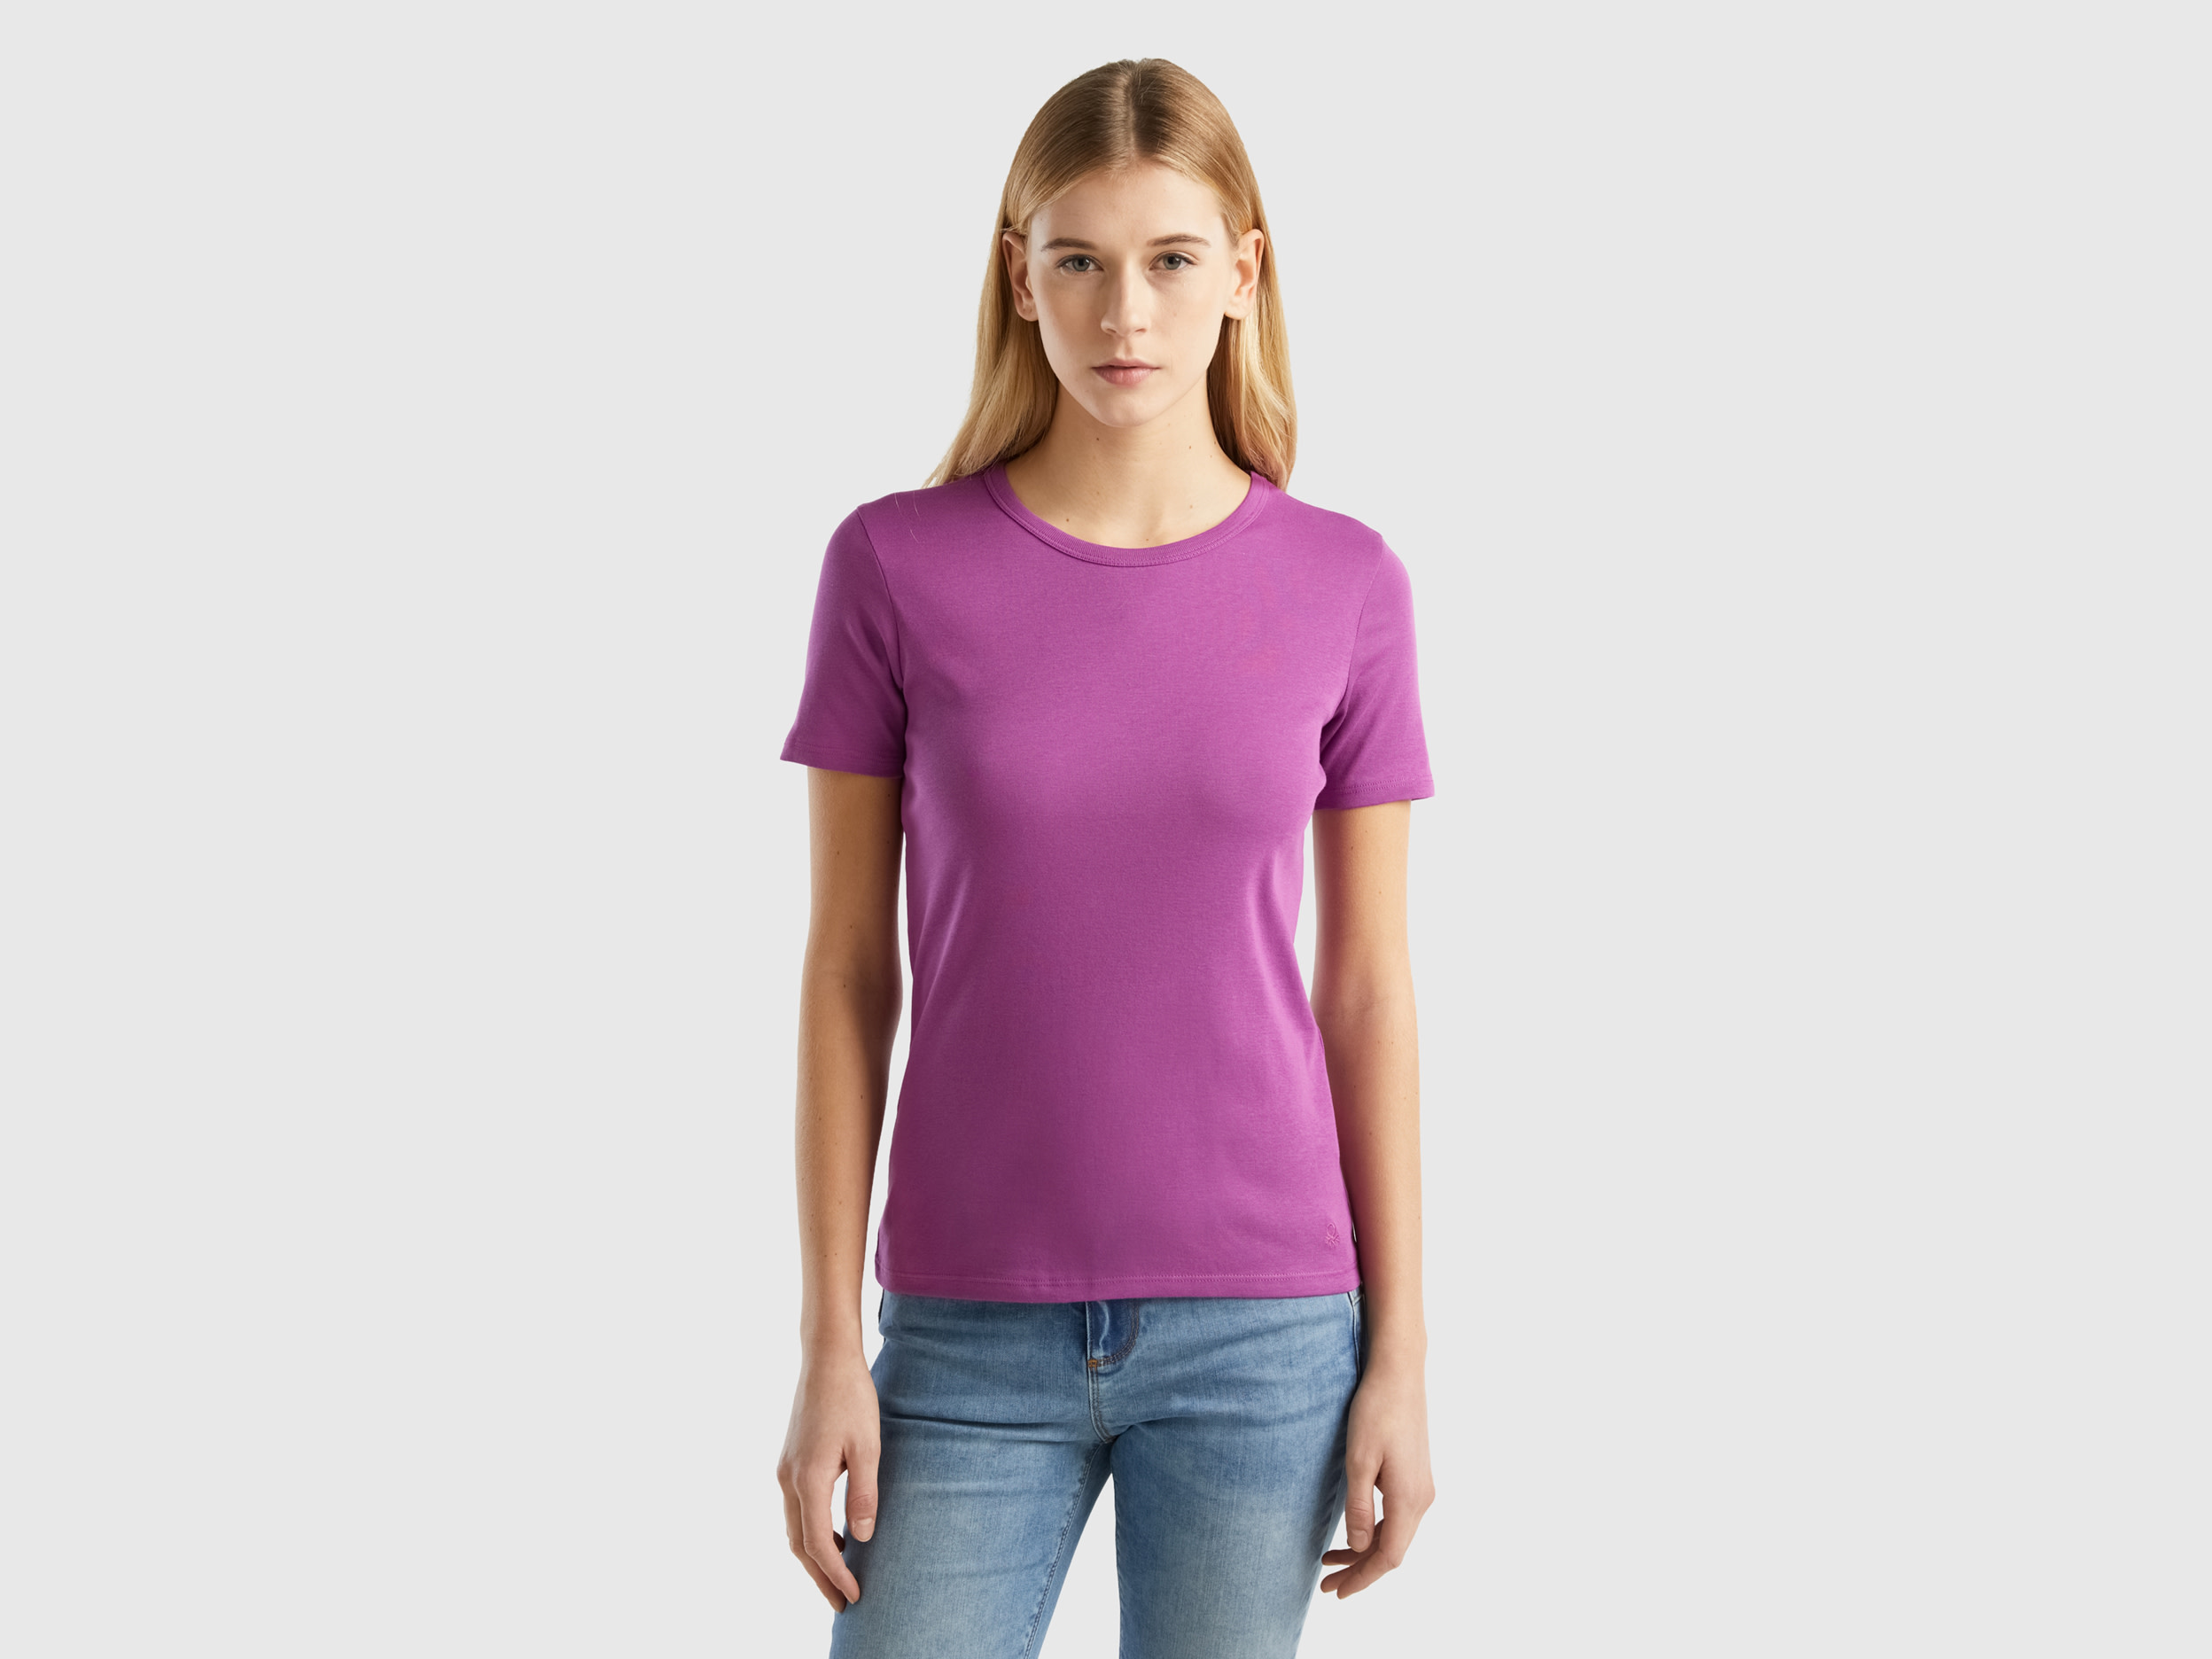 Benetton, Long Fiber Cotton T-shirt, size XS, Violet, Women